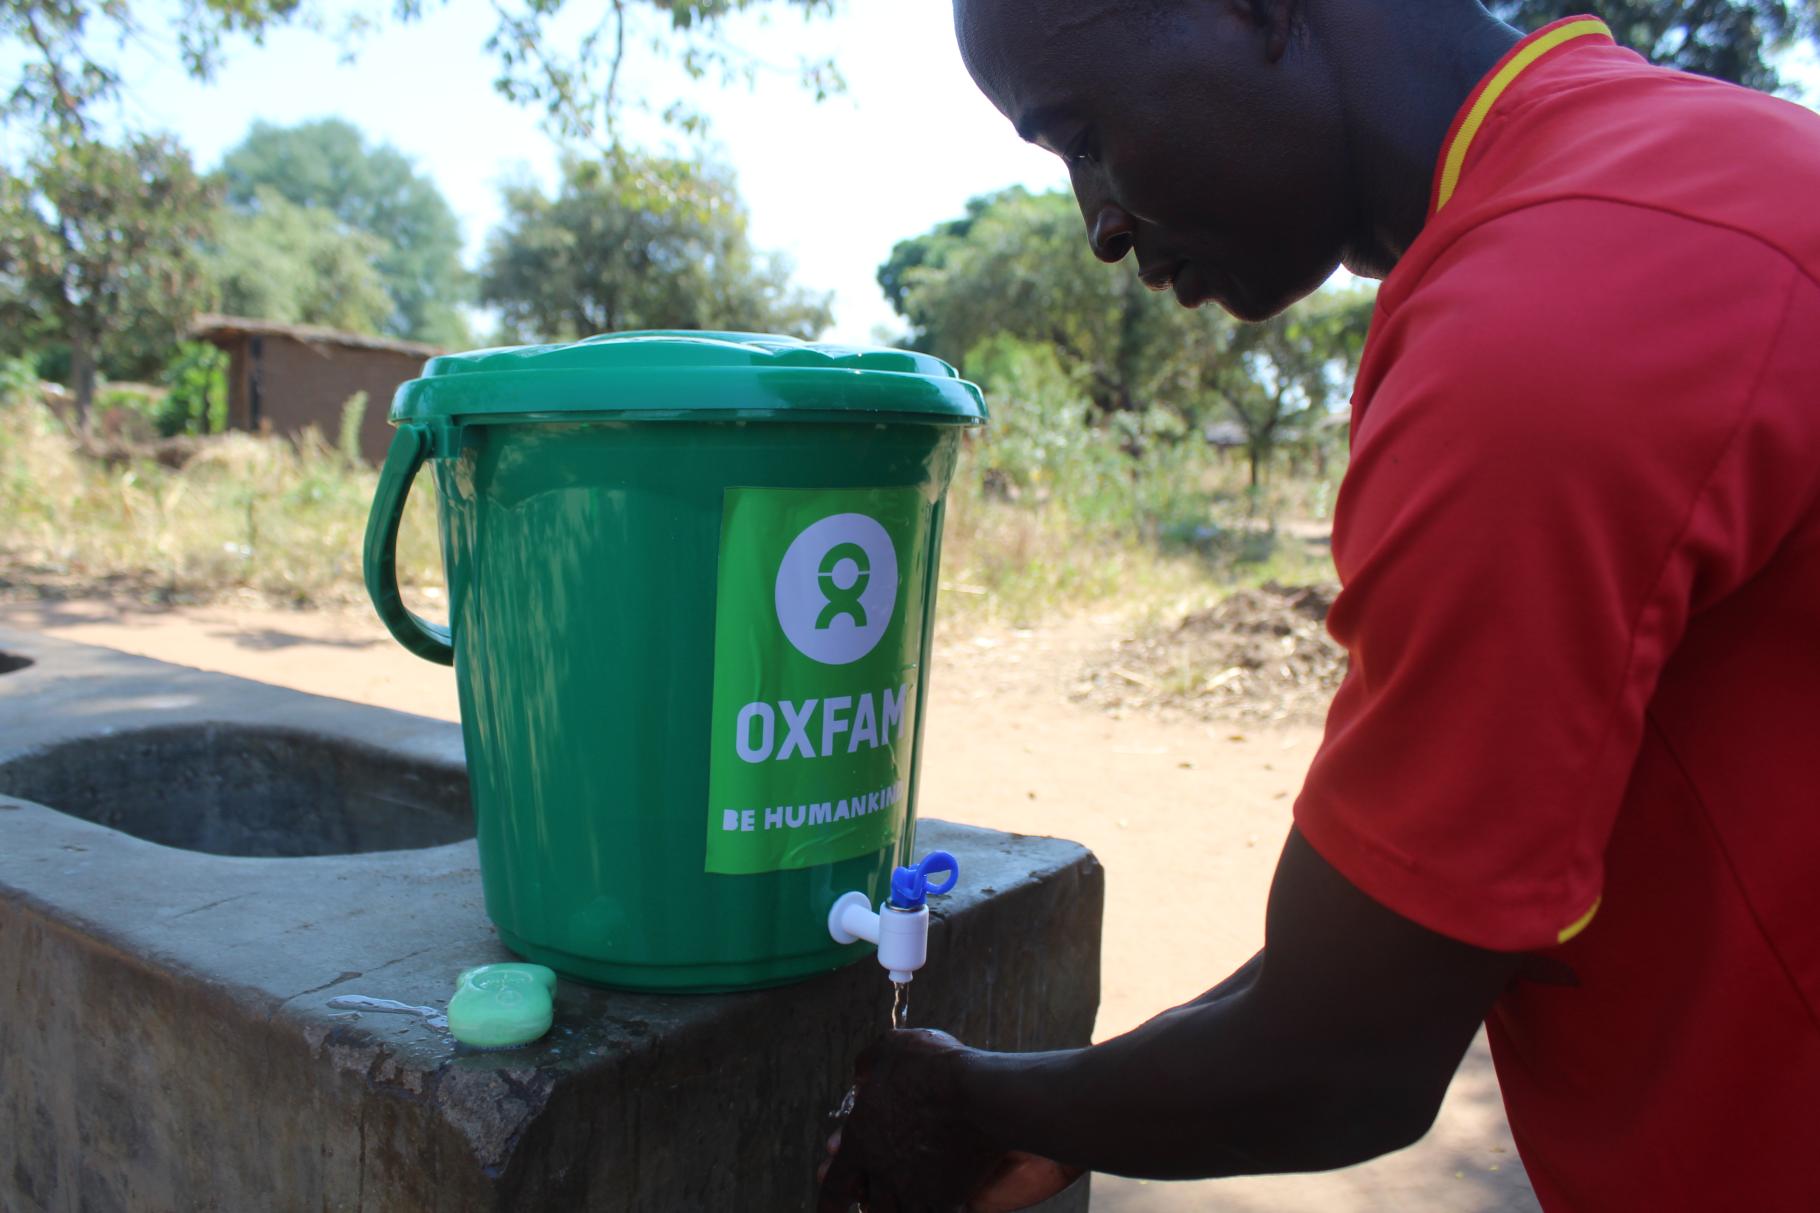 Rexo Chimotokoma aus Malawi demonstriert die Bedienung eines grünen Wassereimers mit Oxfam-Logo drauf.